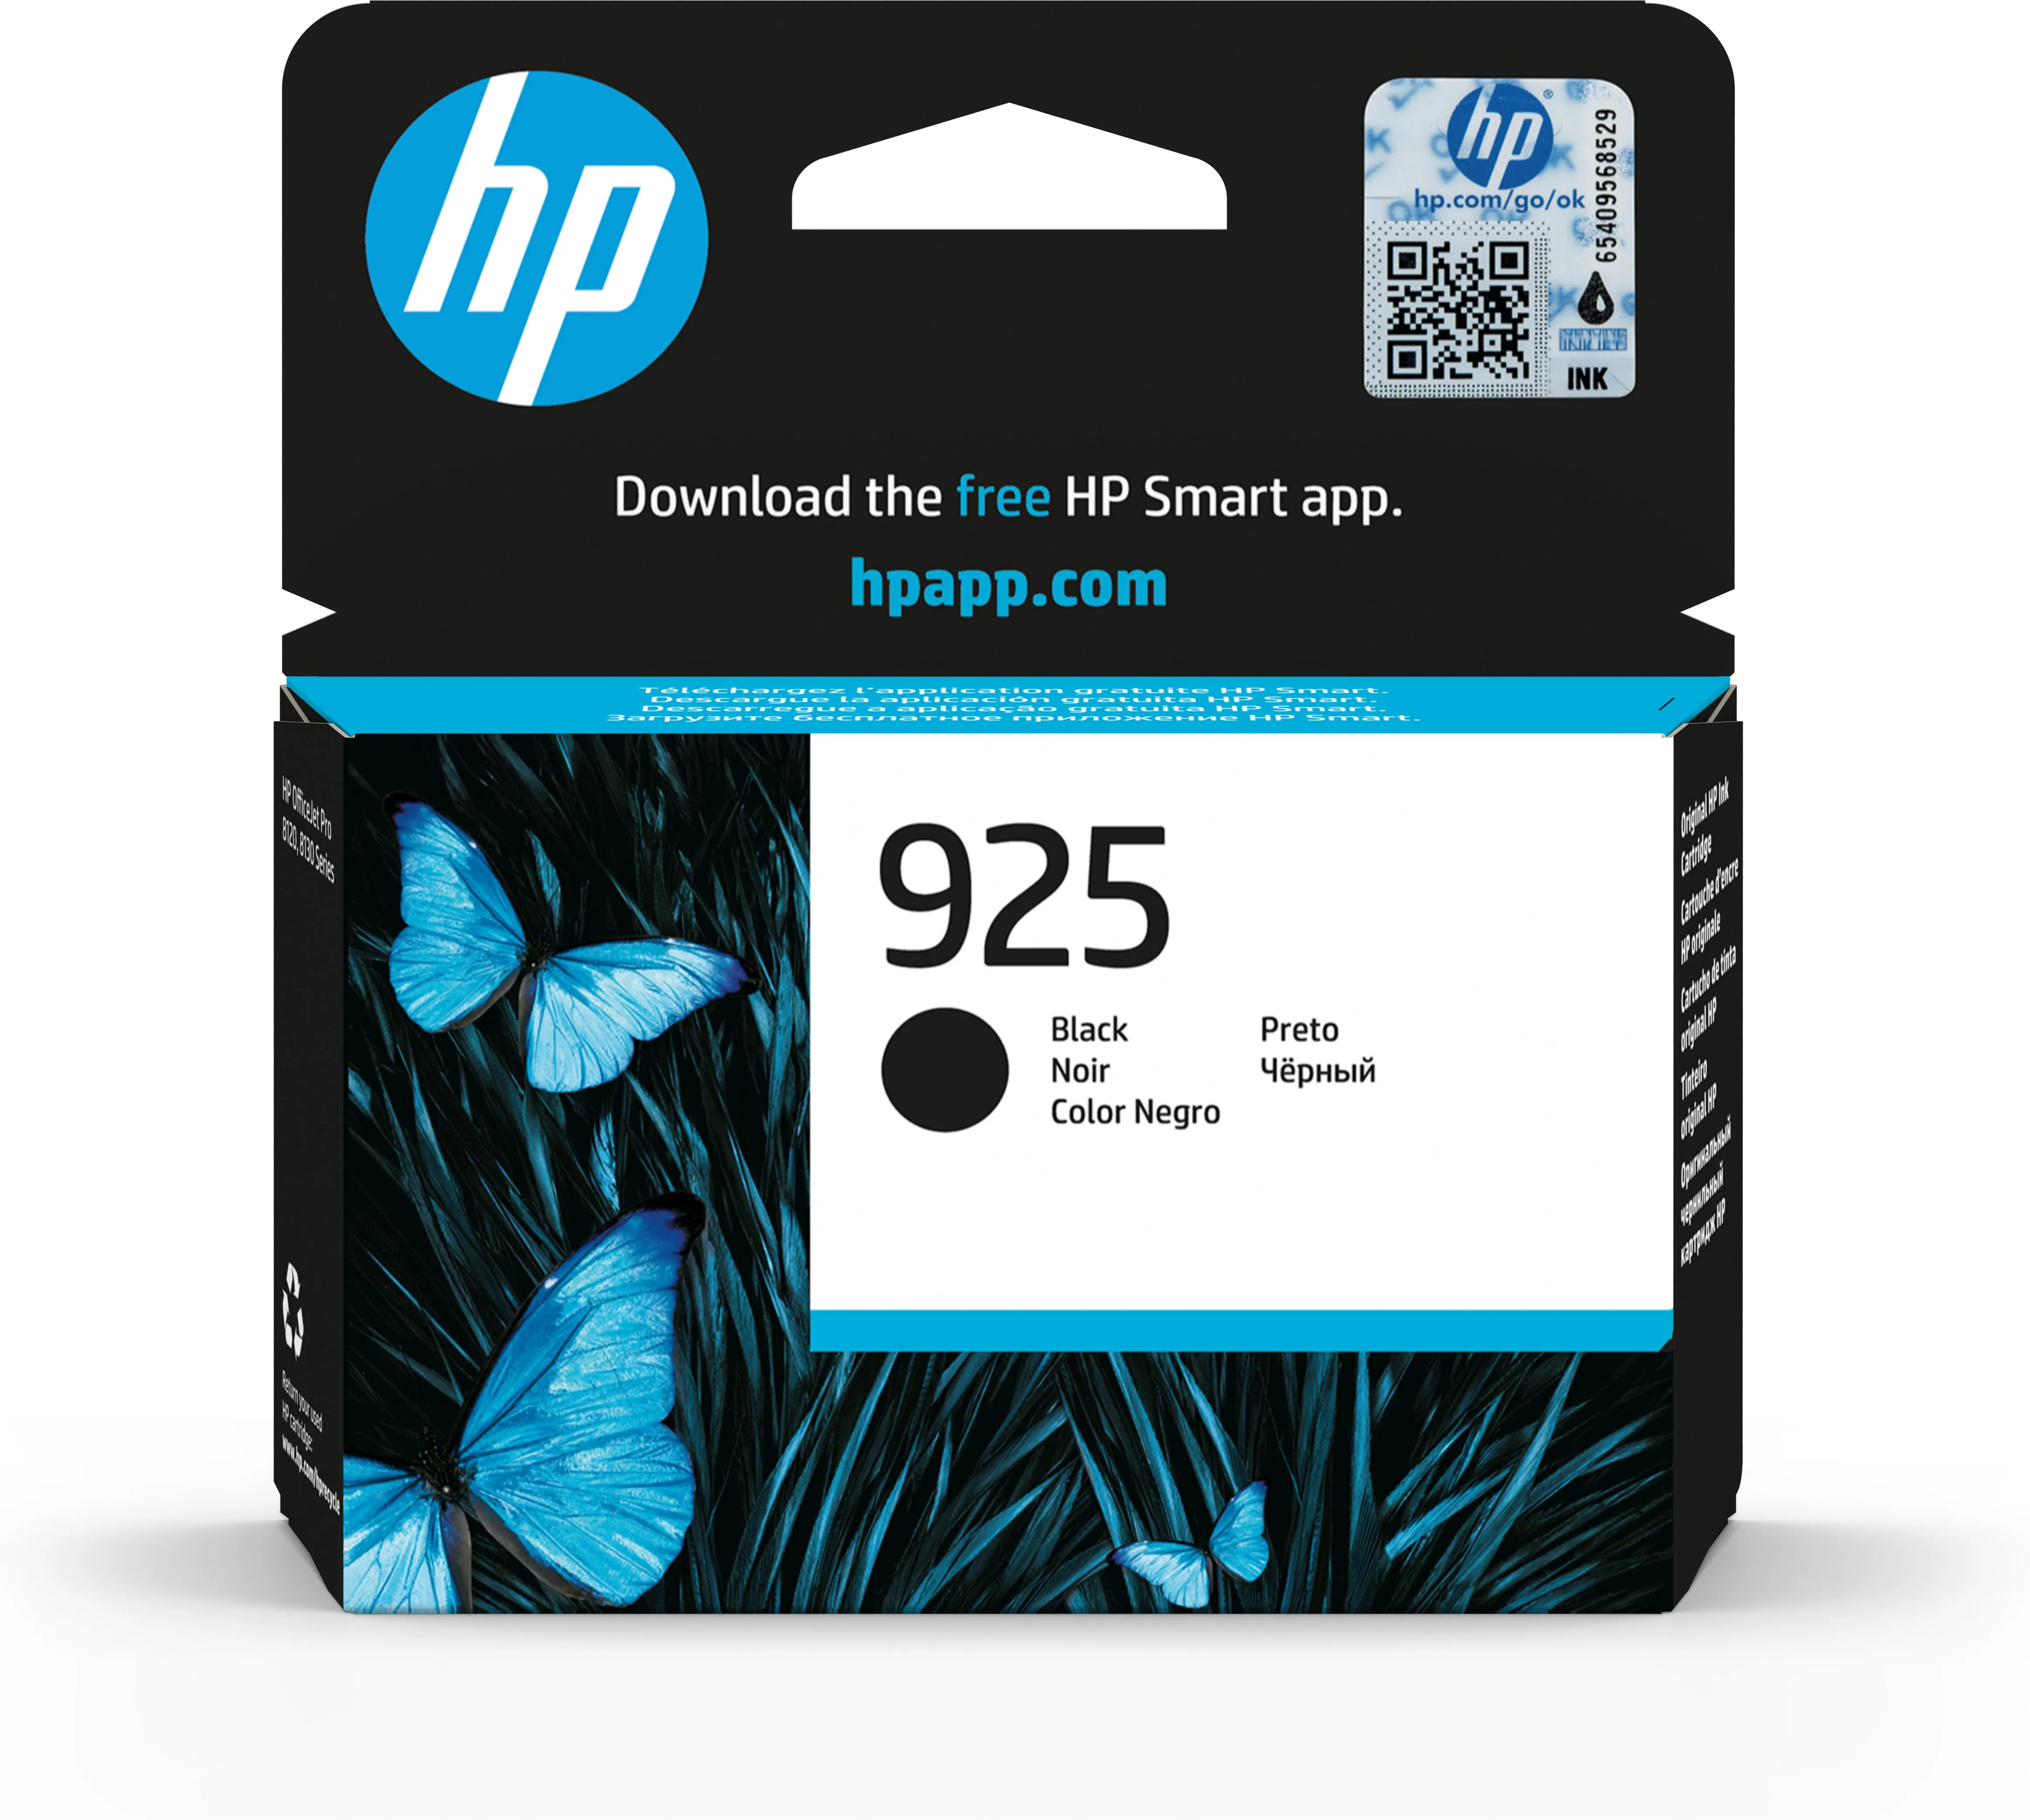 Vente HP 925 Black Original Ink Cartridge au meilleur prix